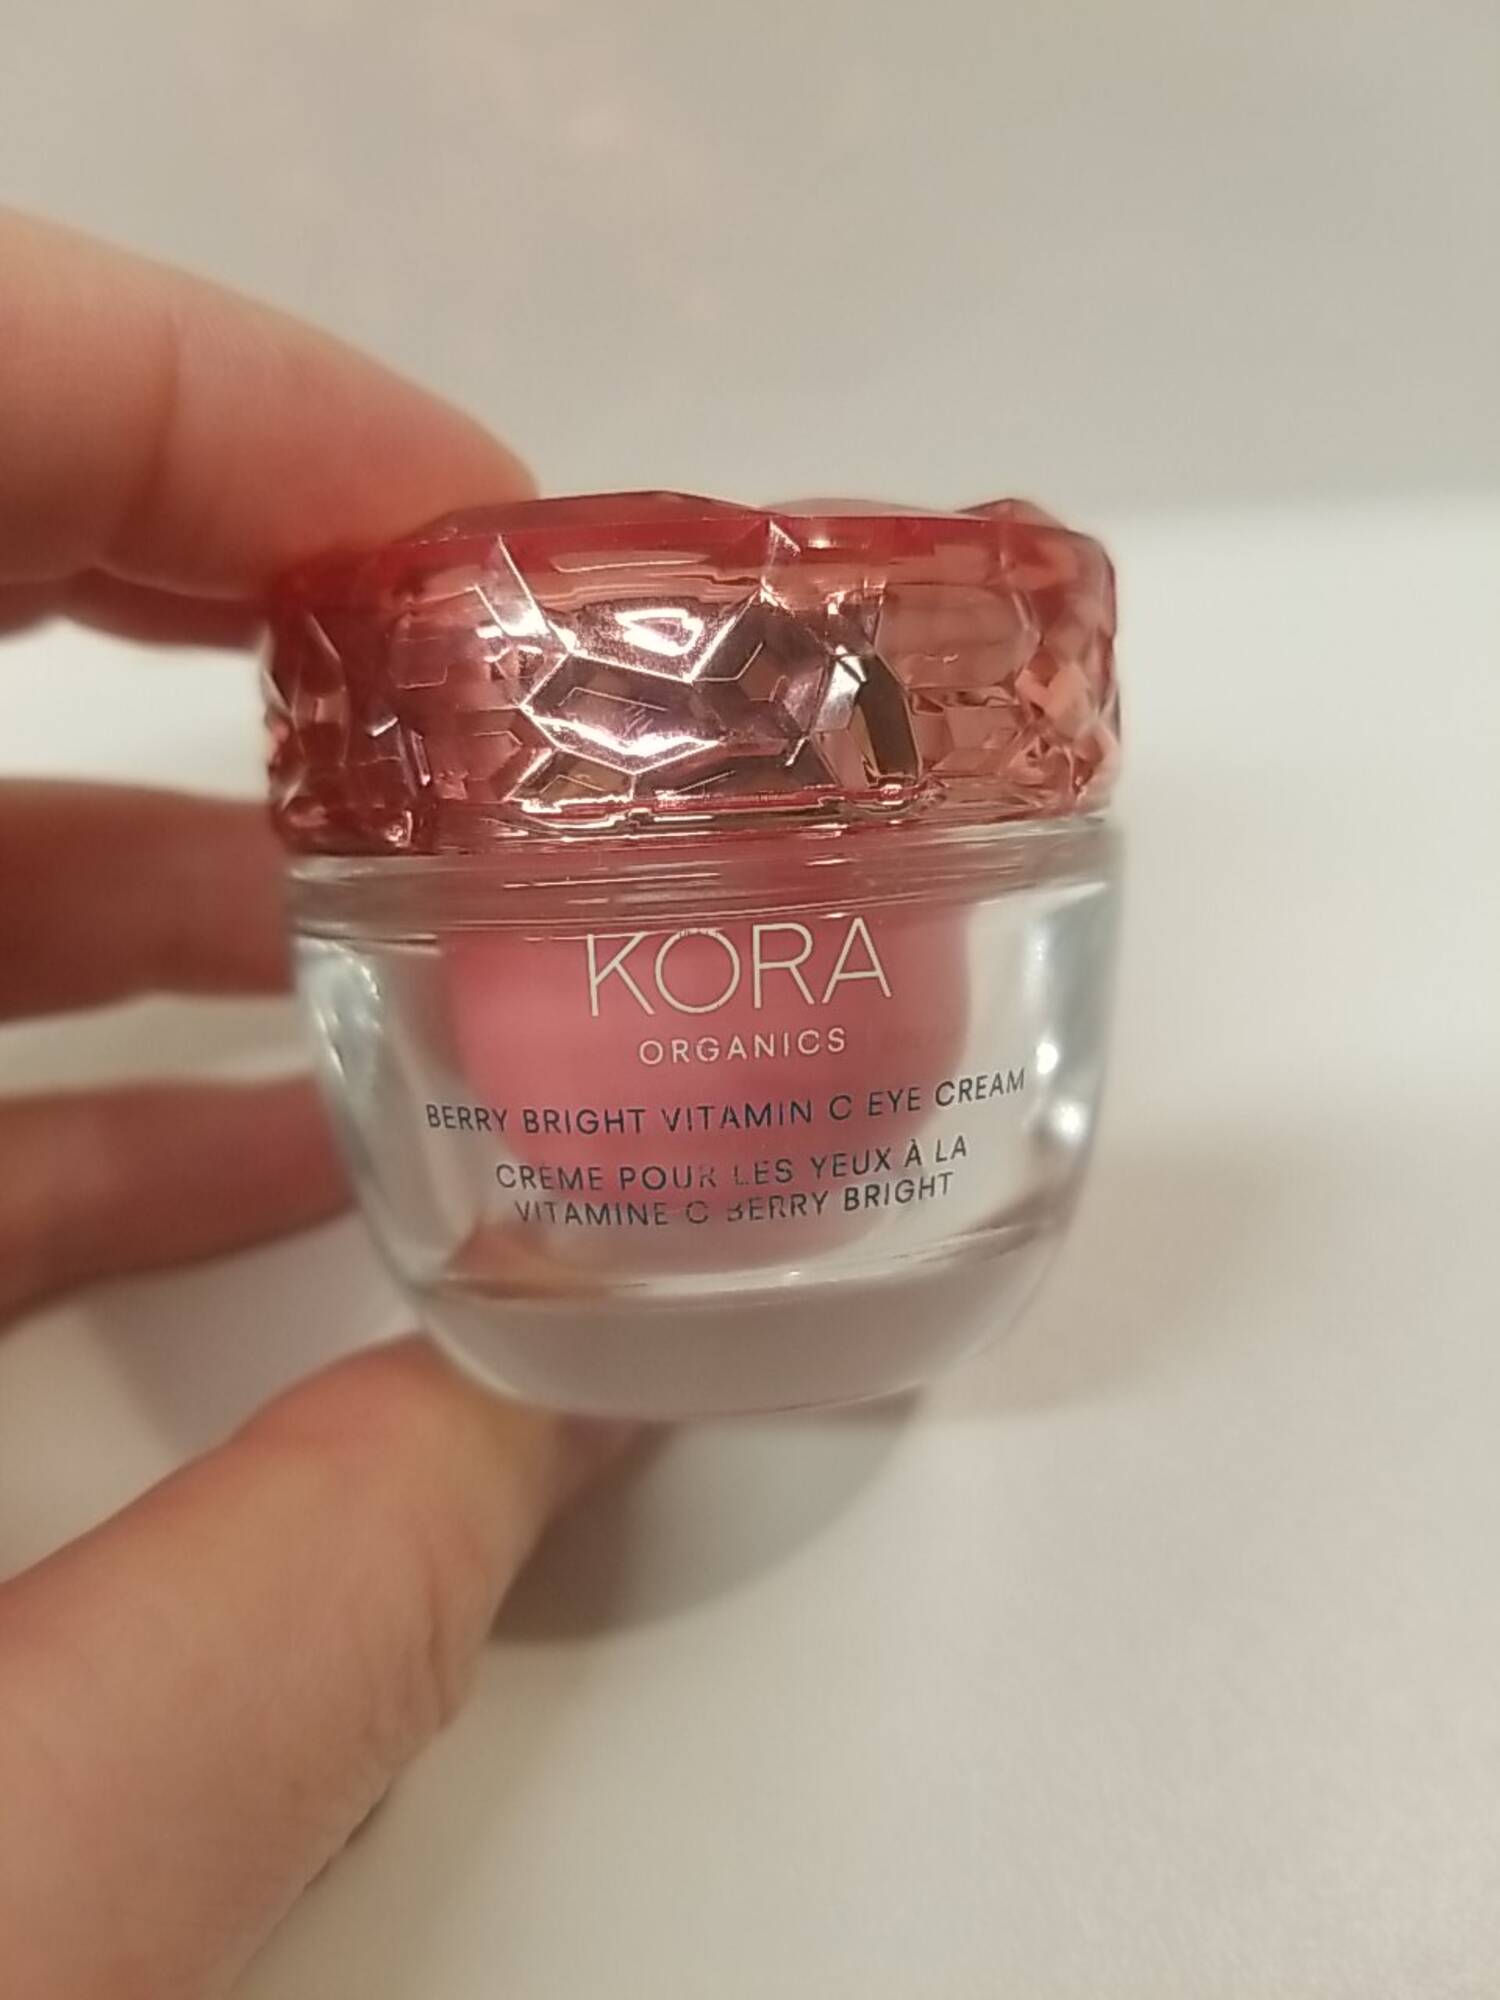 KORA ORGANICS - Crème pour les yeux à la vitamine C berry bright